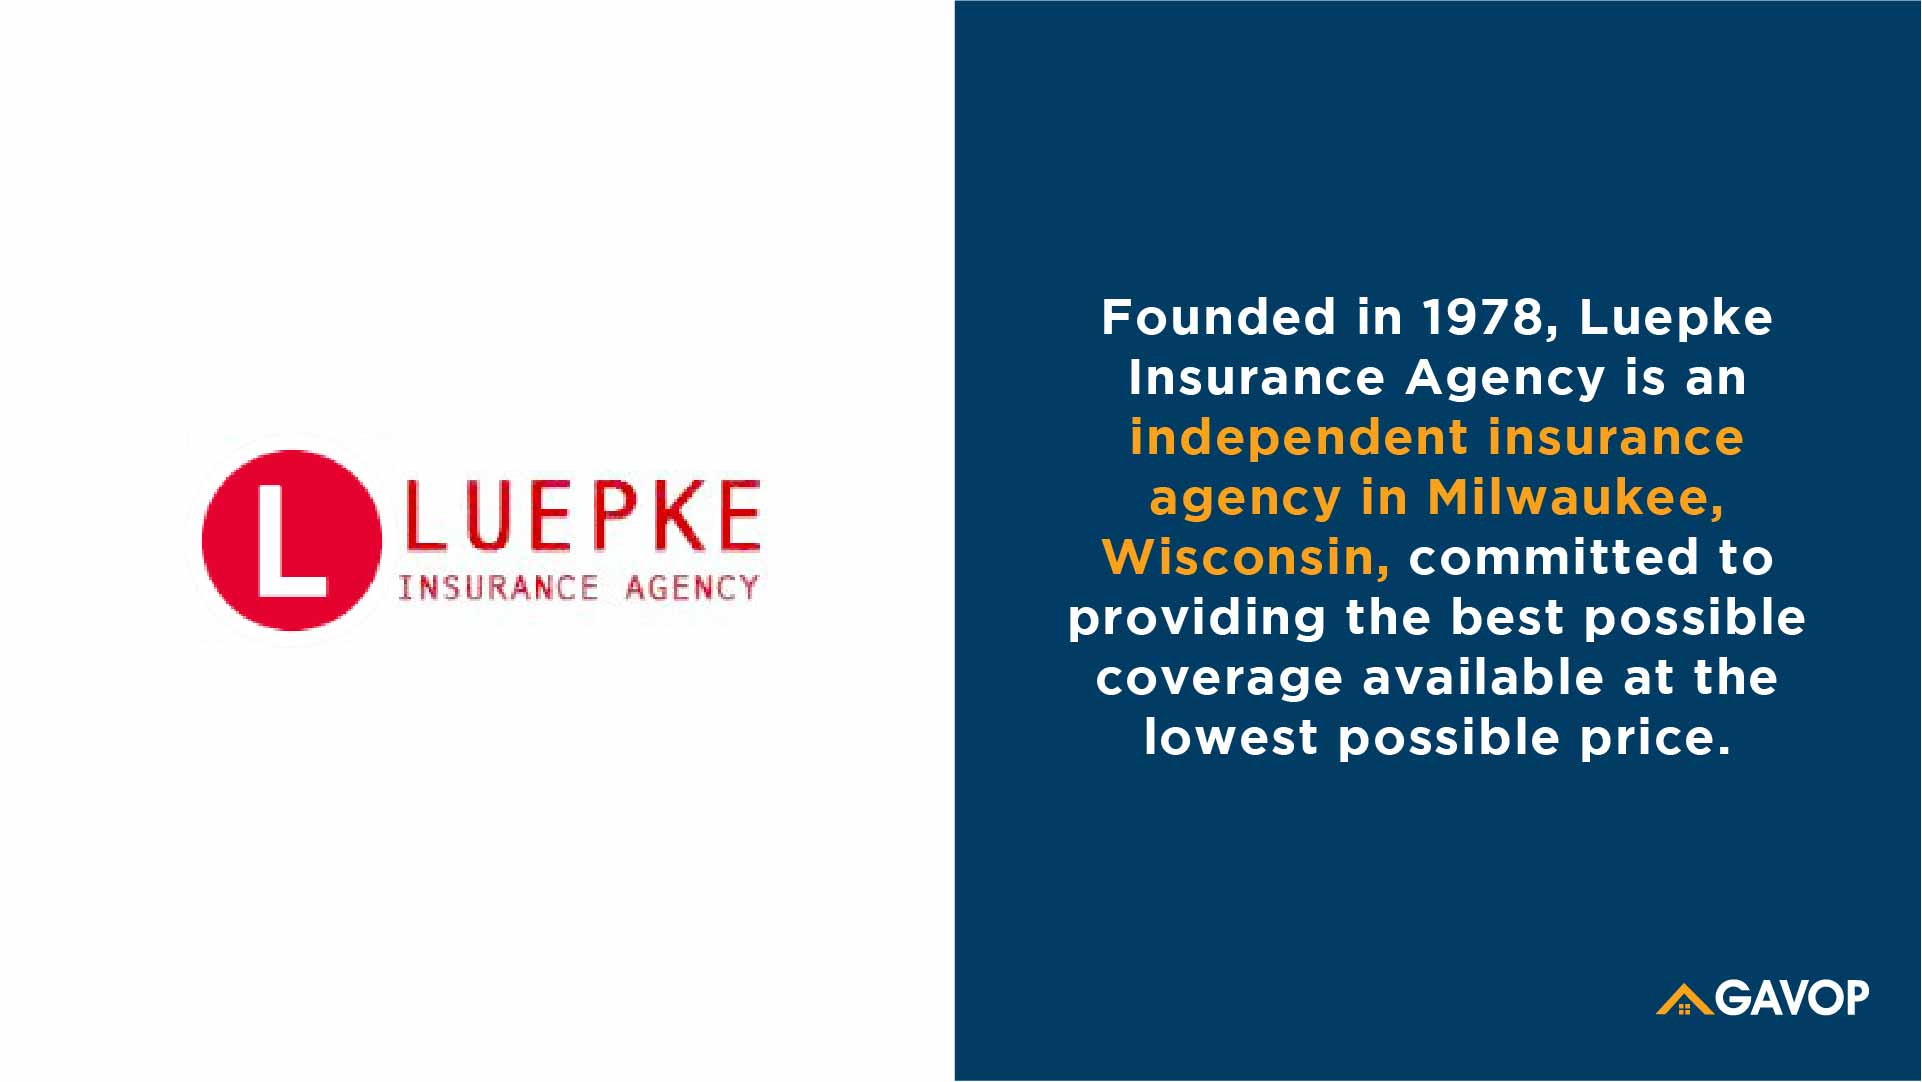 Luepke Insurance Agency